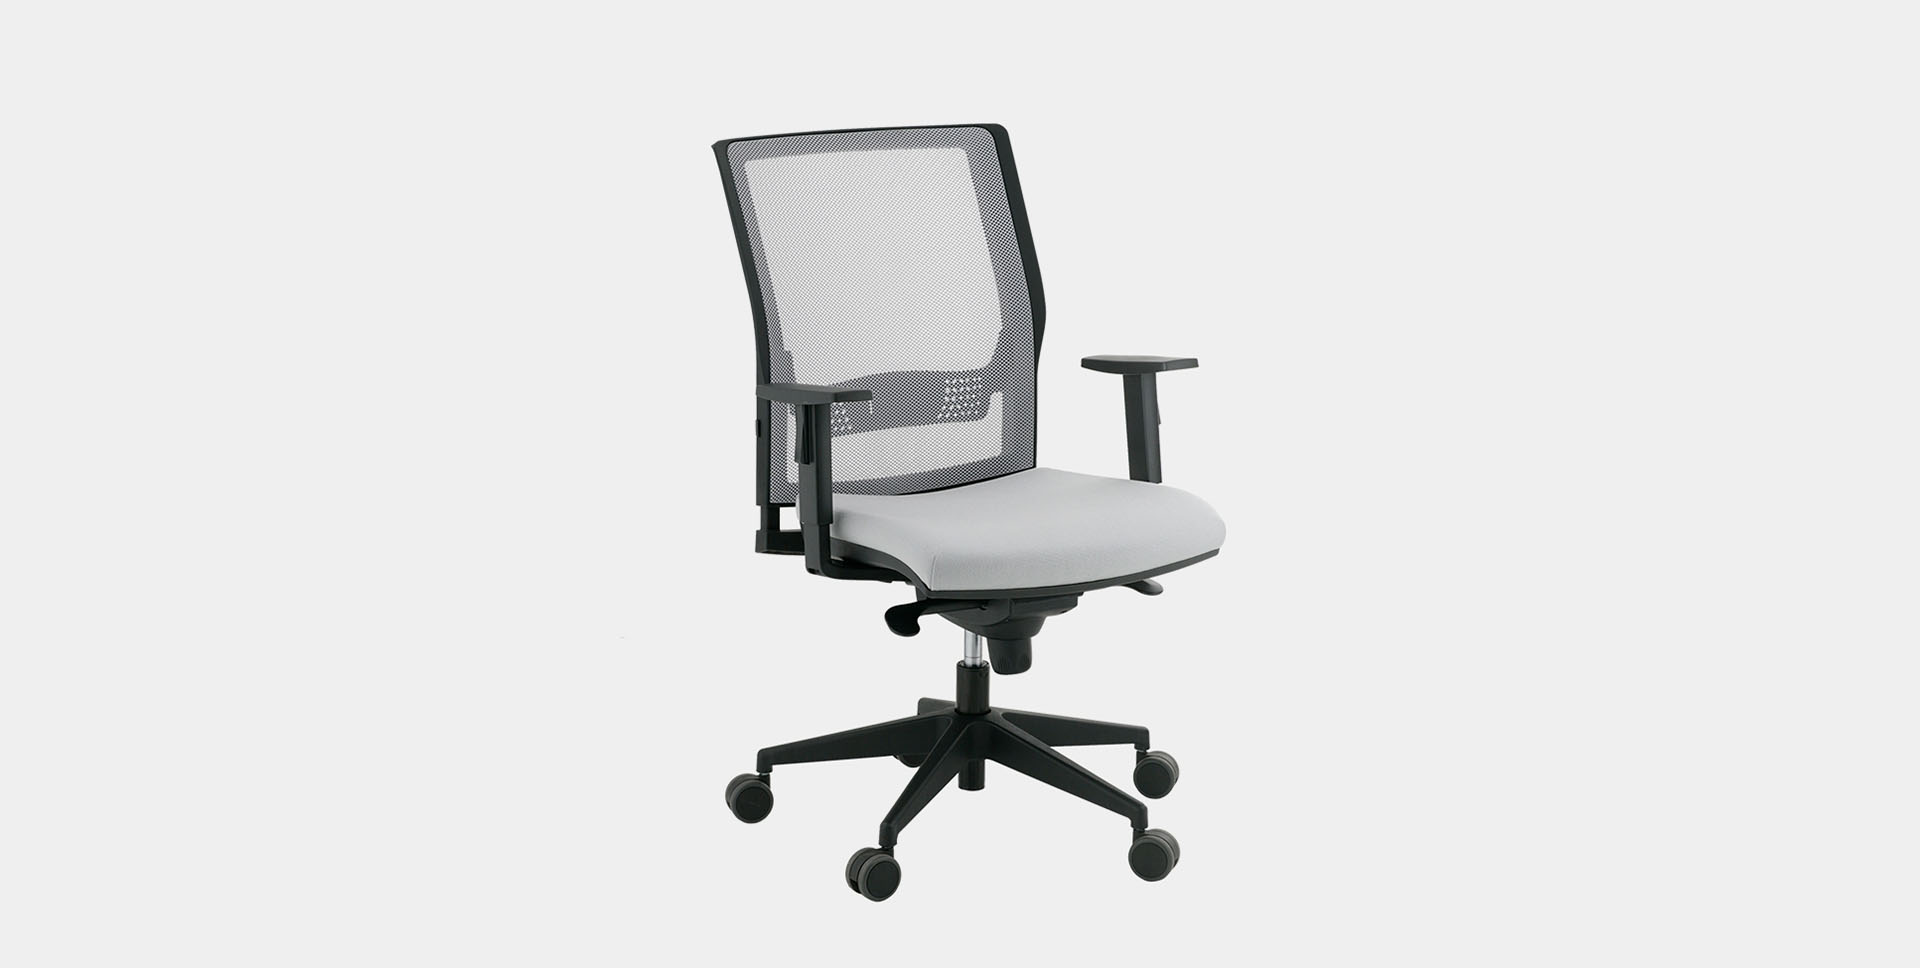 Mobiliario para oficina -silla ergonómica